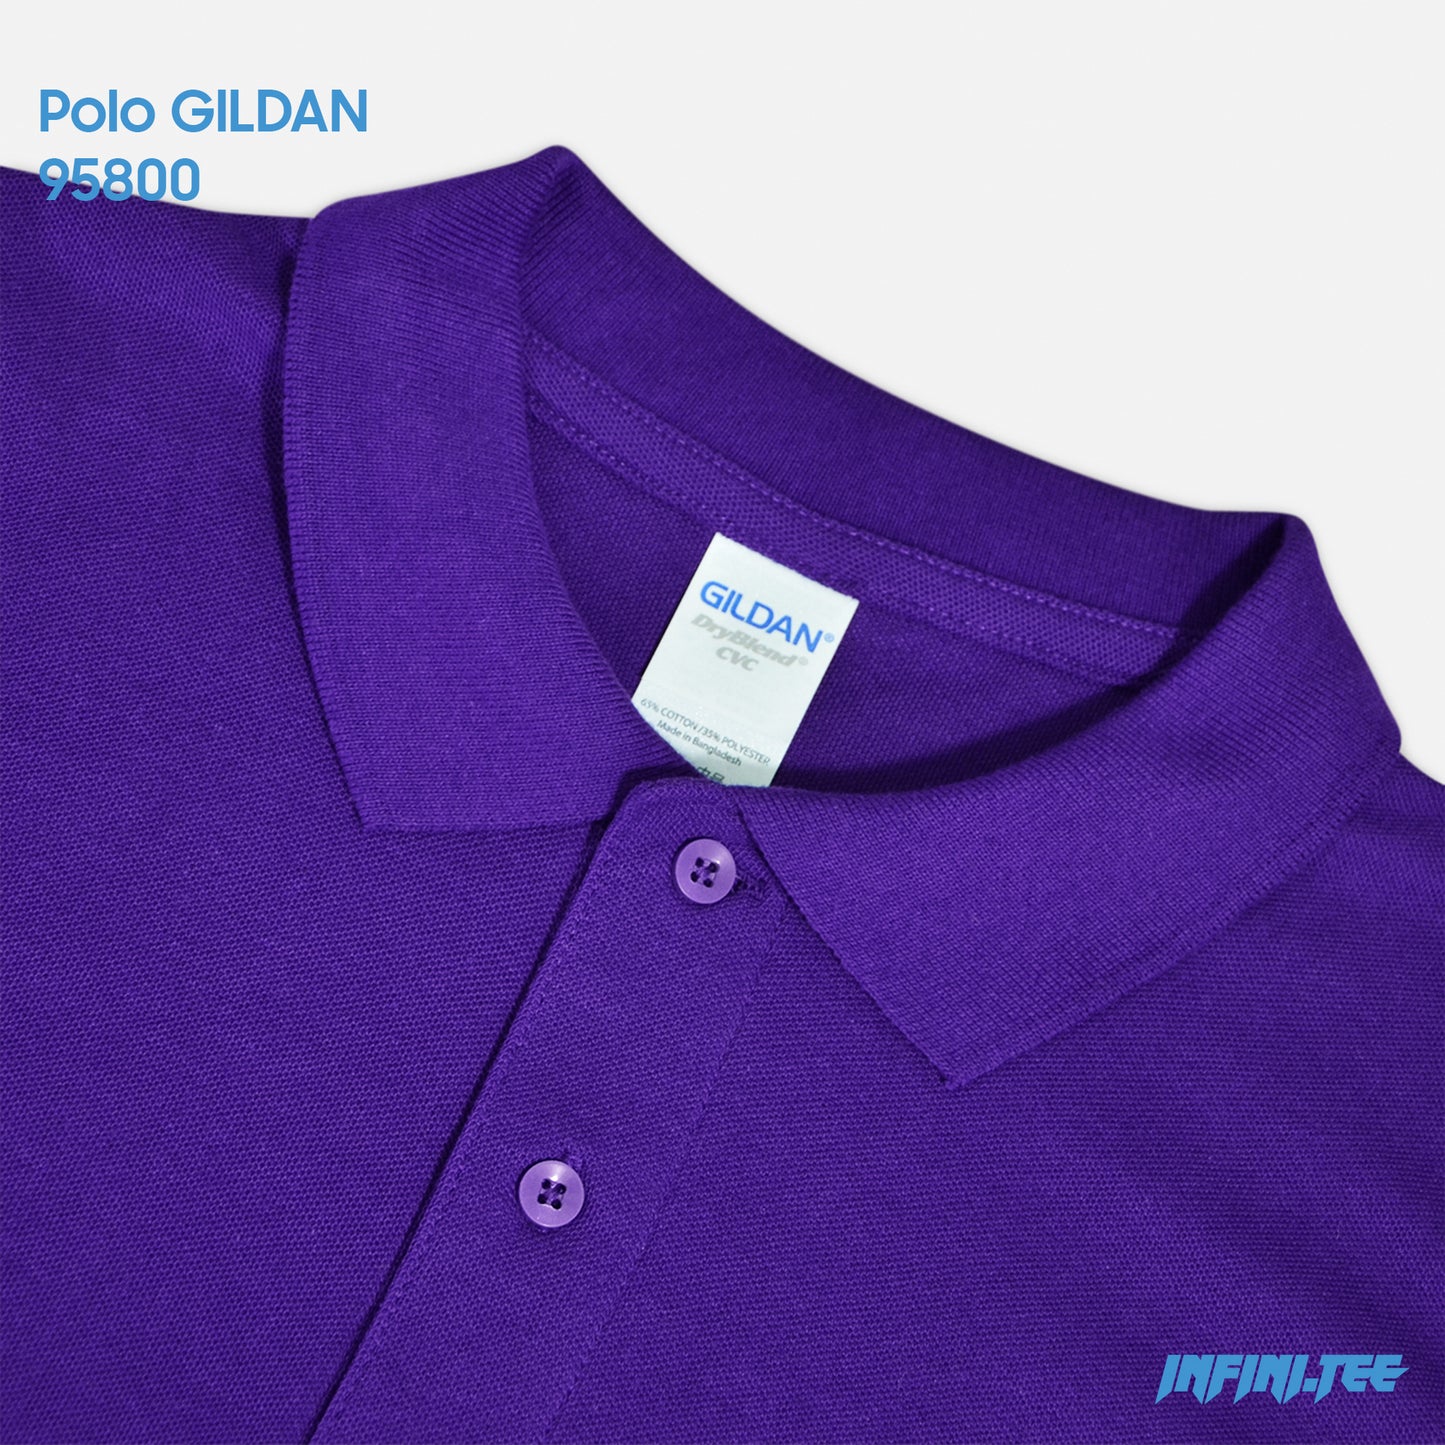 POLO 95800 GILDAN - PURPLE